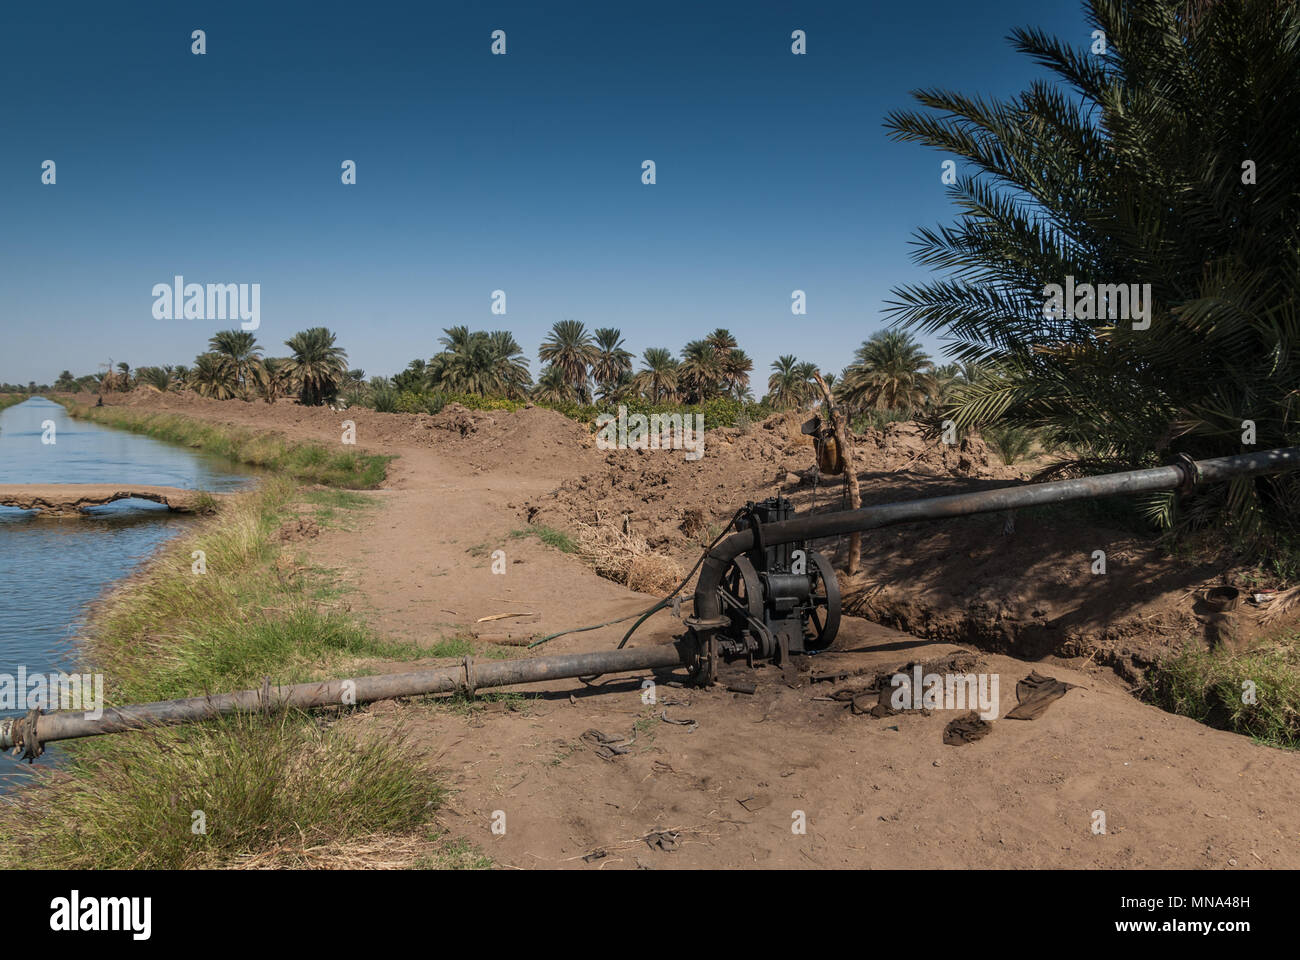 Pompa e canale di irrigazione nei pressi di Kerma, Sudan settentrionale Foto Stock